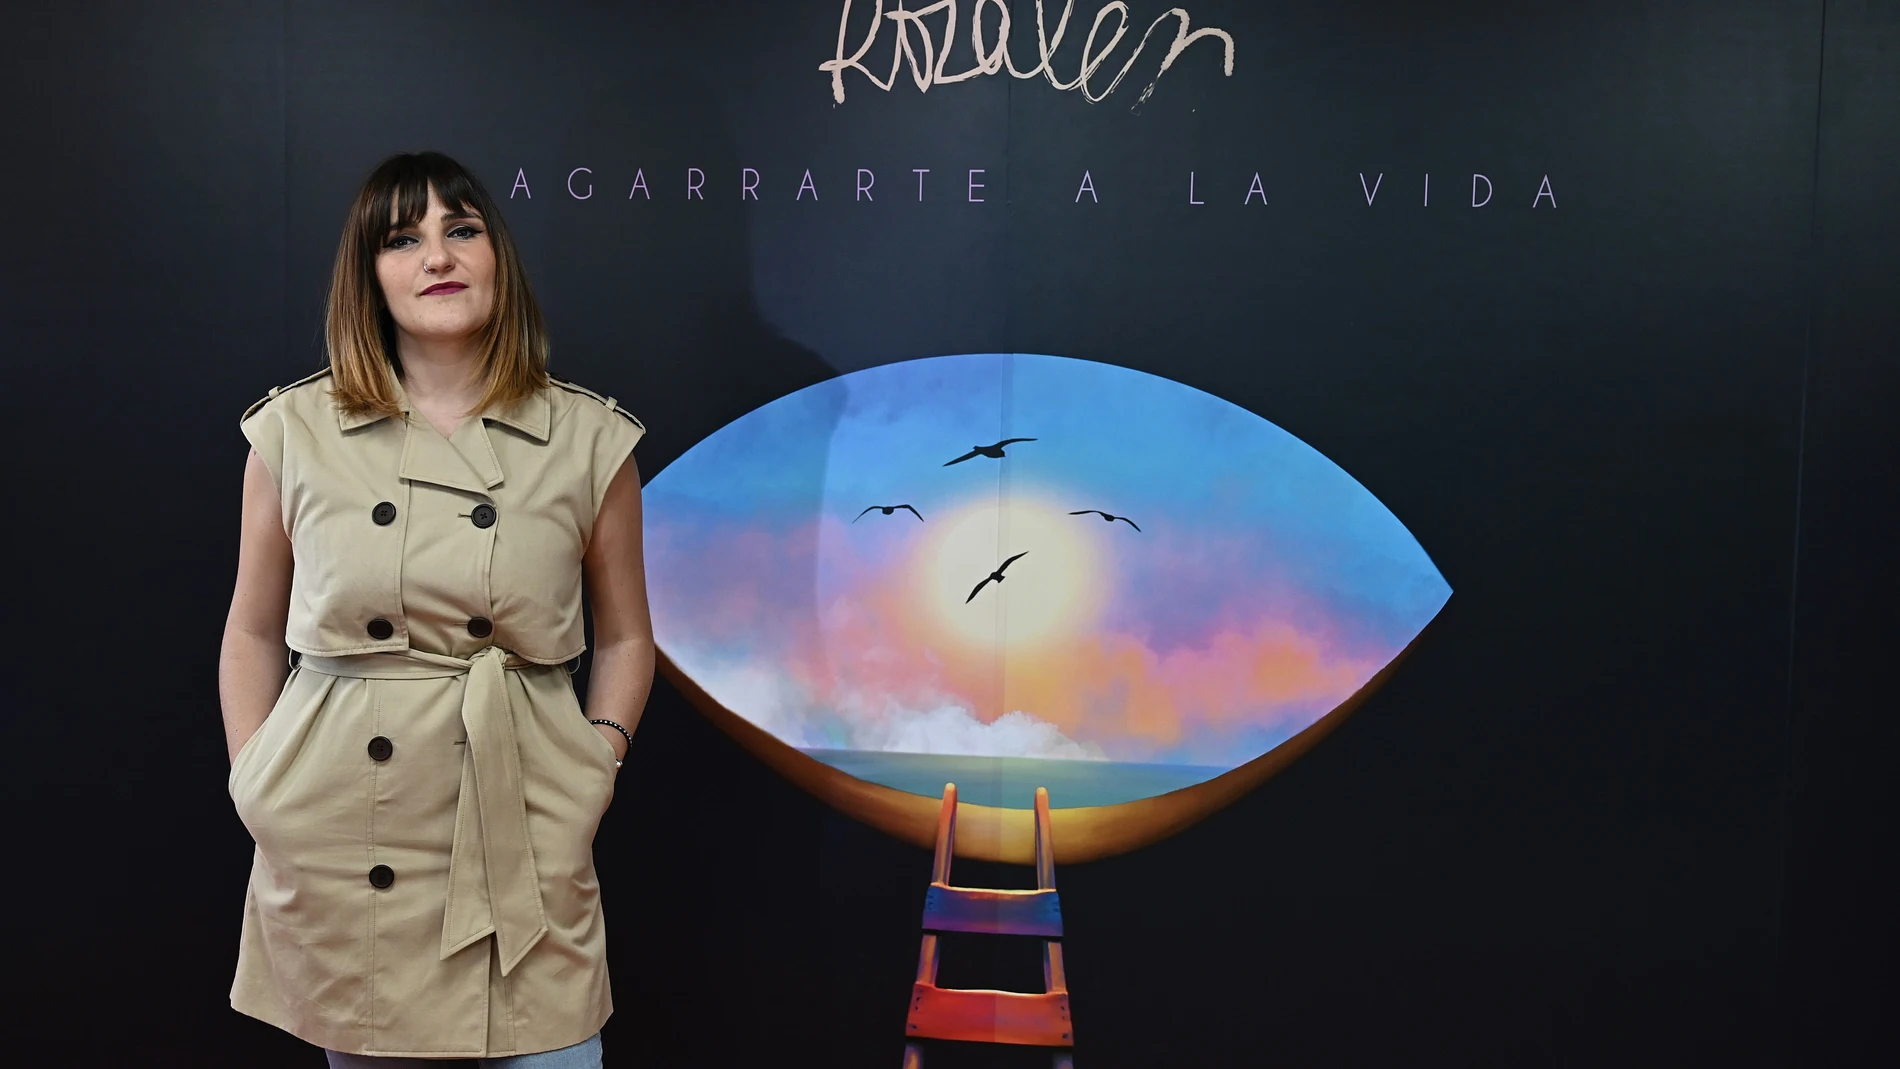 La artista española Rozalén presenta este lunes en Madrid su tema "Agarrarte a la vida", donde visibiliza la salud mental y el suicidio